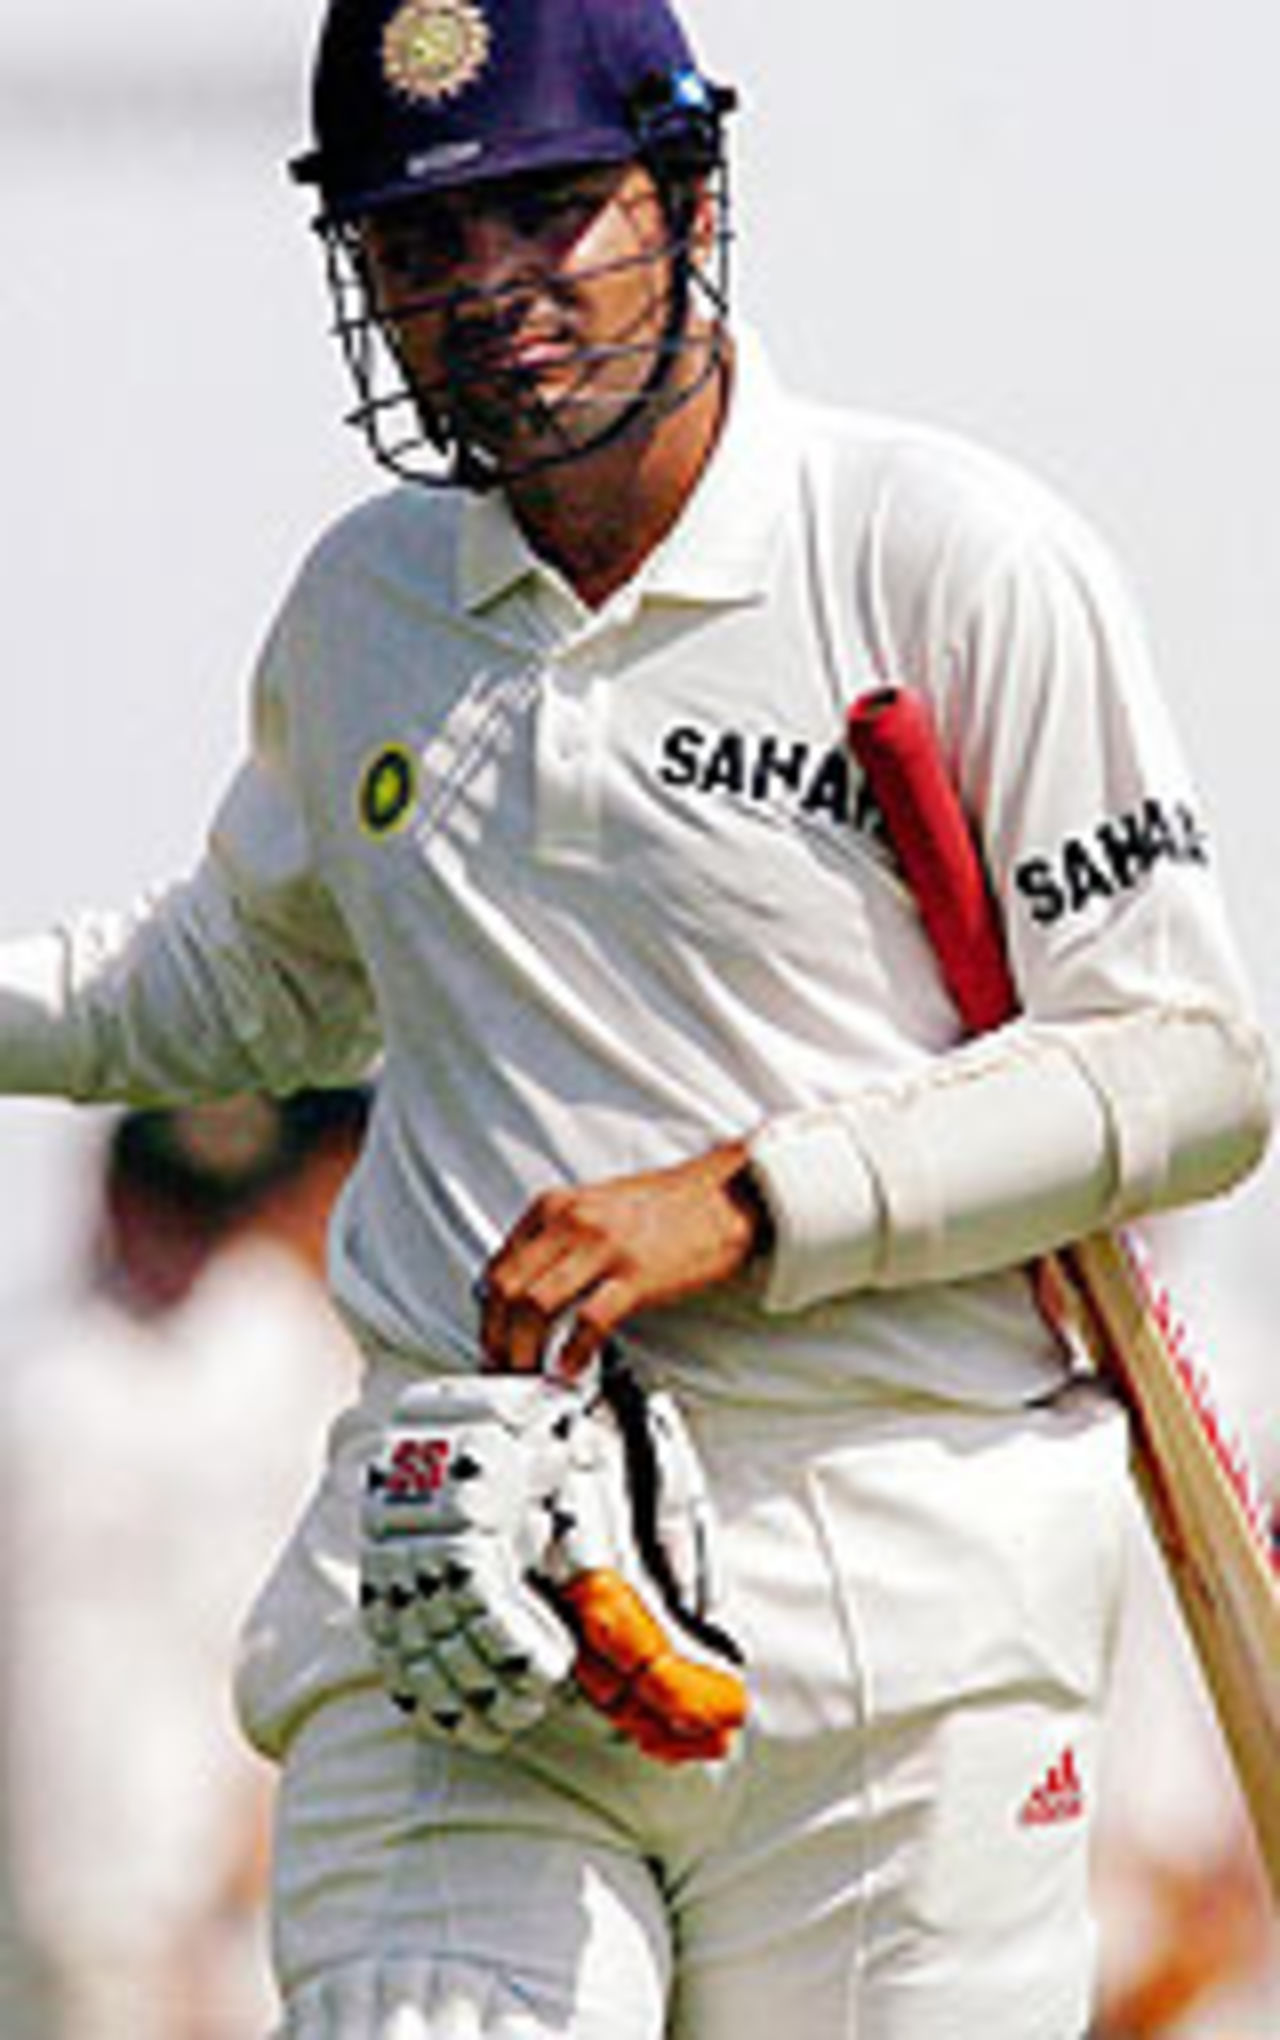 Virender Sehwag walks back after being dismissed, India v Australia, 3rd Test, Nagpur, October 27, 2004